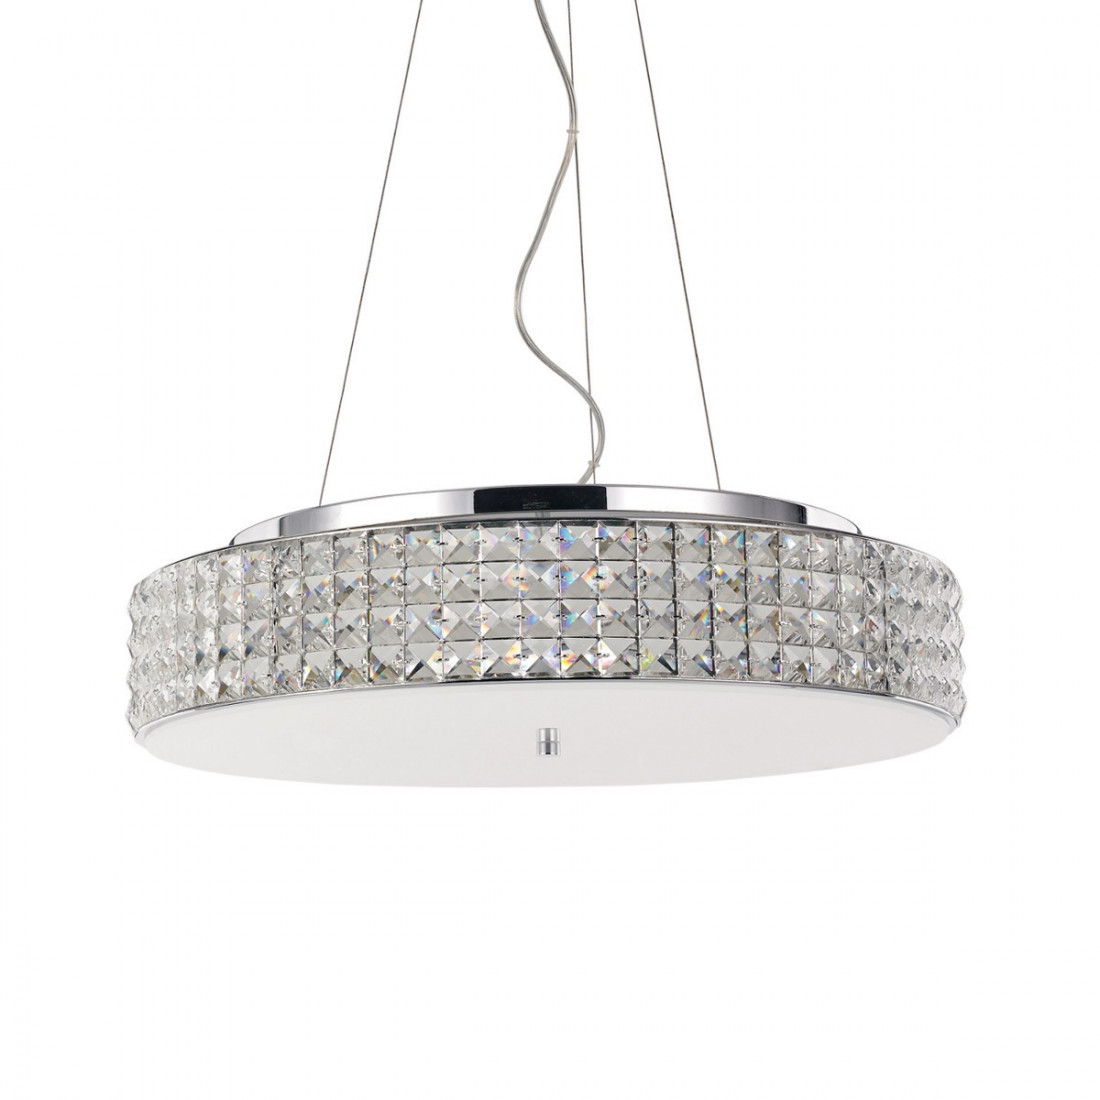 Saint Mossi Moderno Cristallo Pioggia lampadario LED lampadario a soffitto lampada a sospensione della luce per il bagno della sala da pranzo soggiorno 9 E14 lampadine H28cm x L50cm